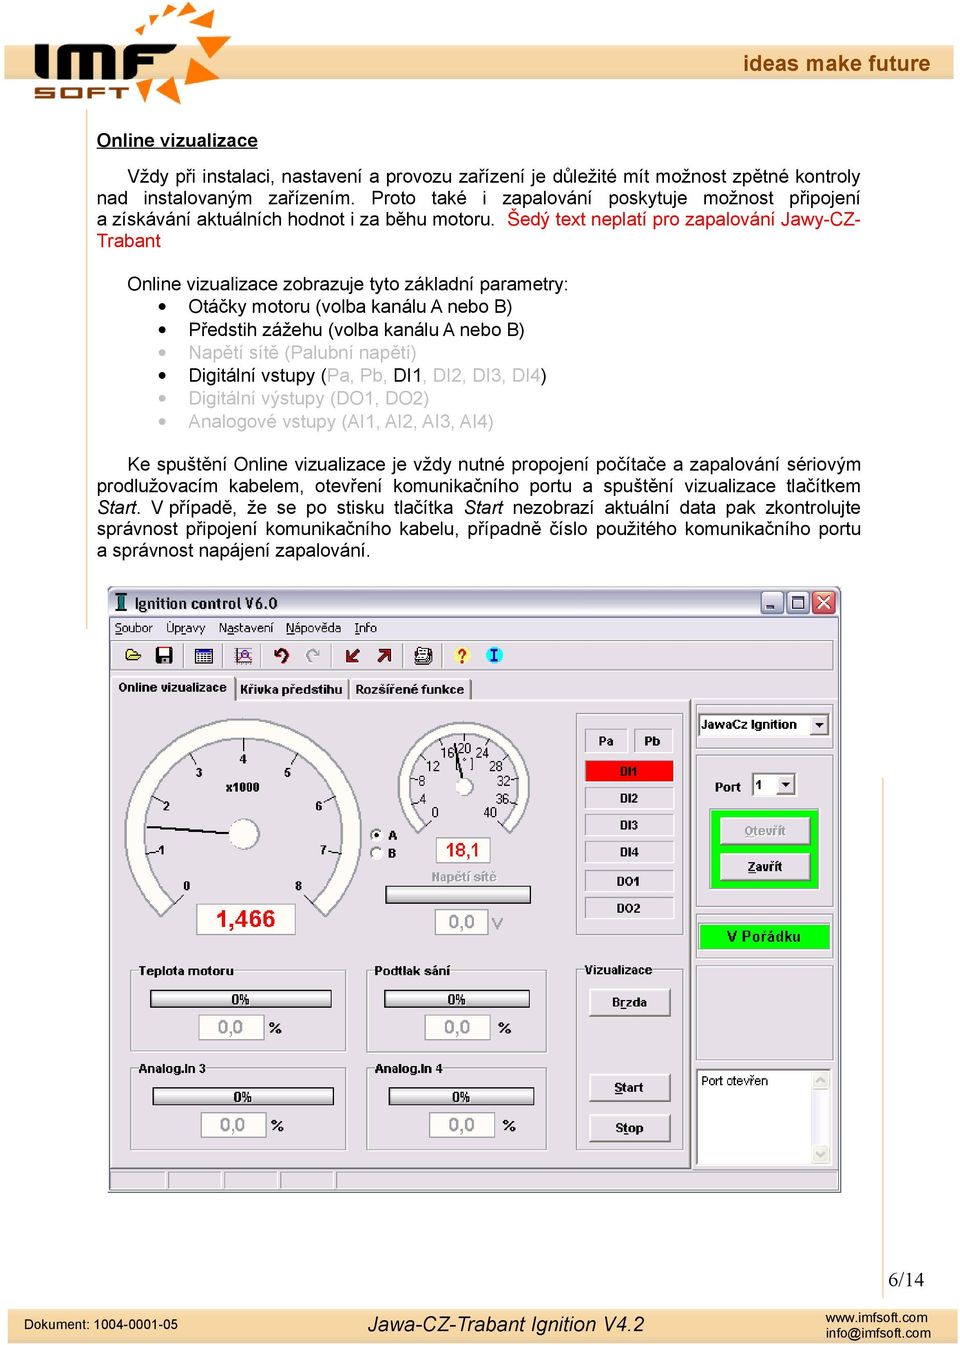 Šedý text neplatí pro zapalování Jawy-CZ- Trabant Online vizualizace zobrazuje tyto základní parametry: Otáčky motoru (volba kanálu A nebo B) Předstih zážehu (volba kanálu A nebo B) Napětí sítě